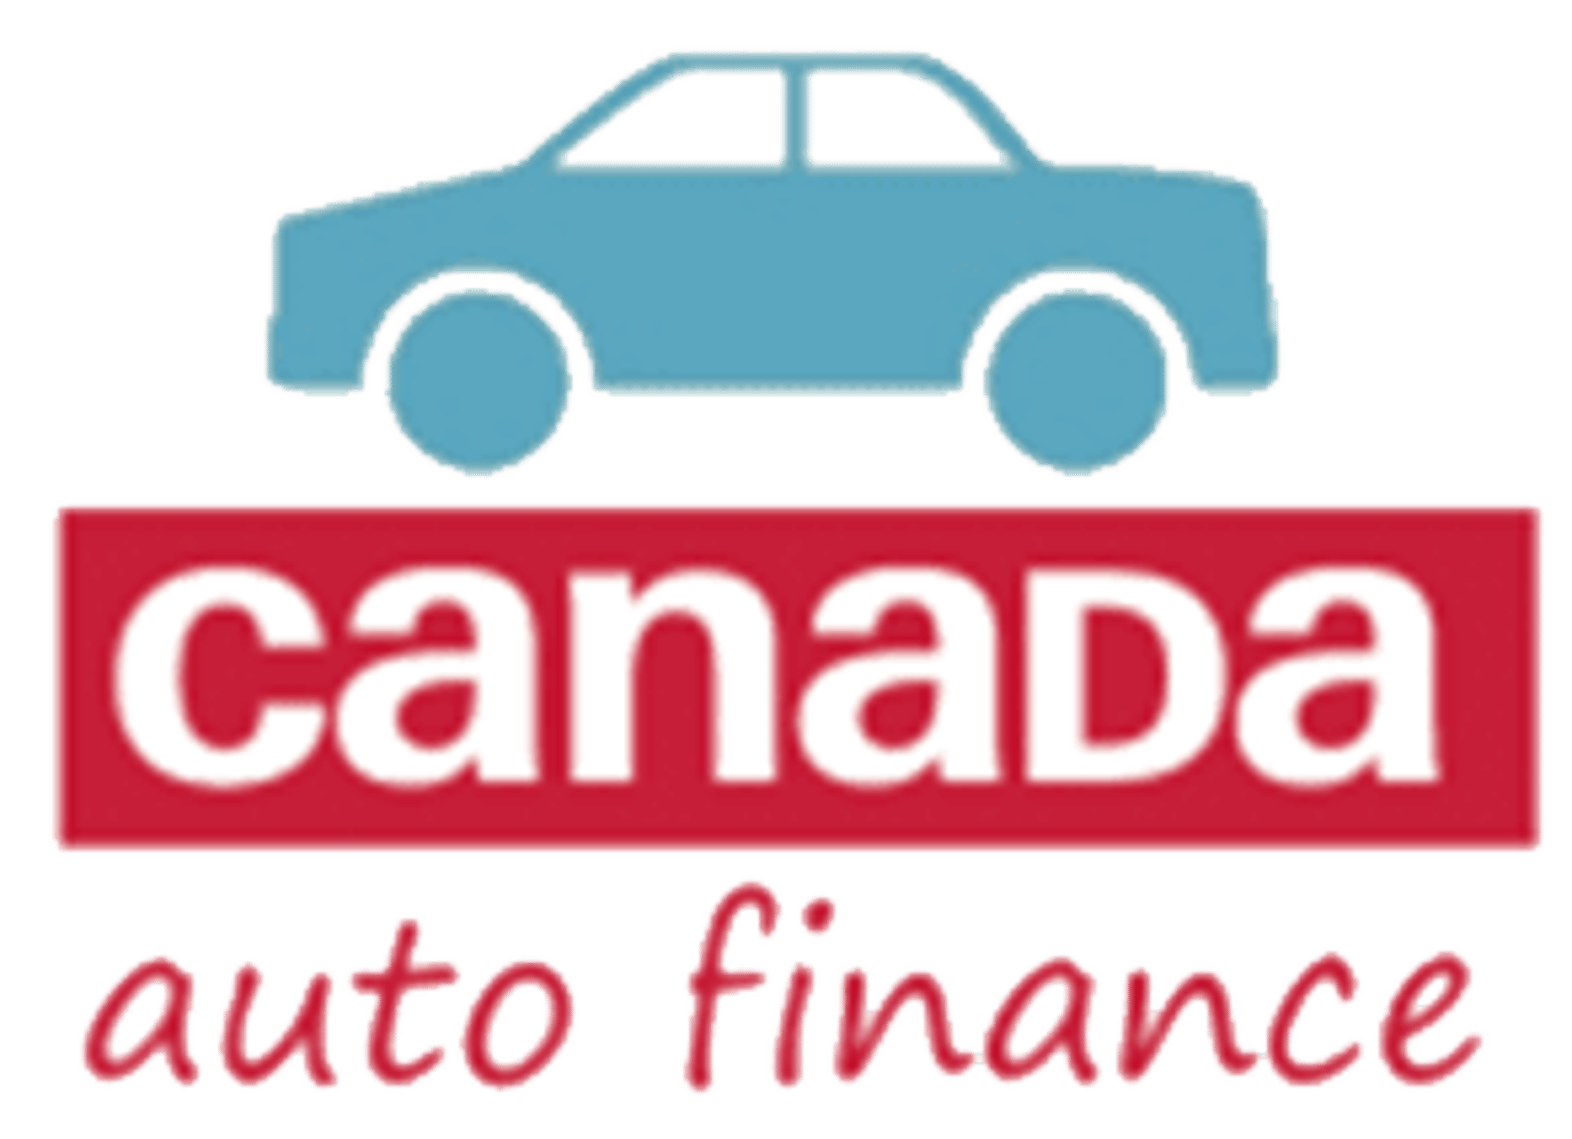 Canada Auto Finance